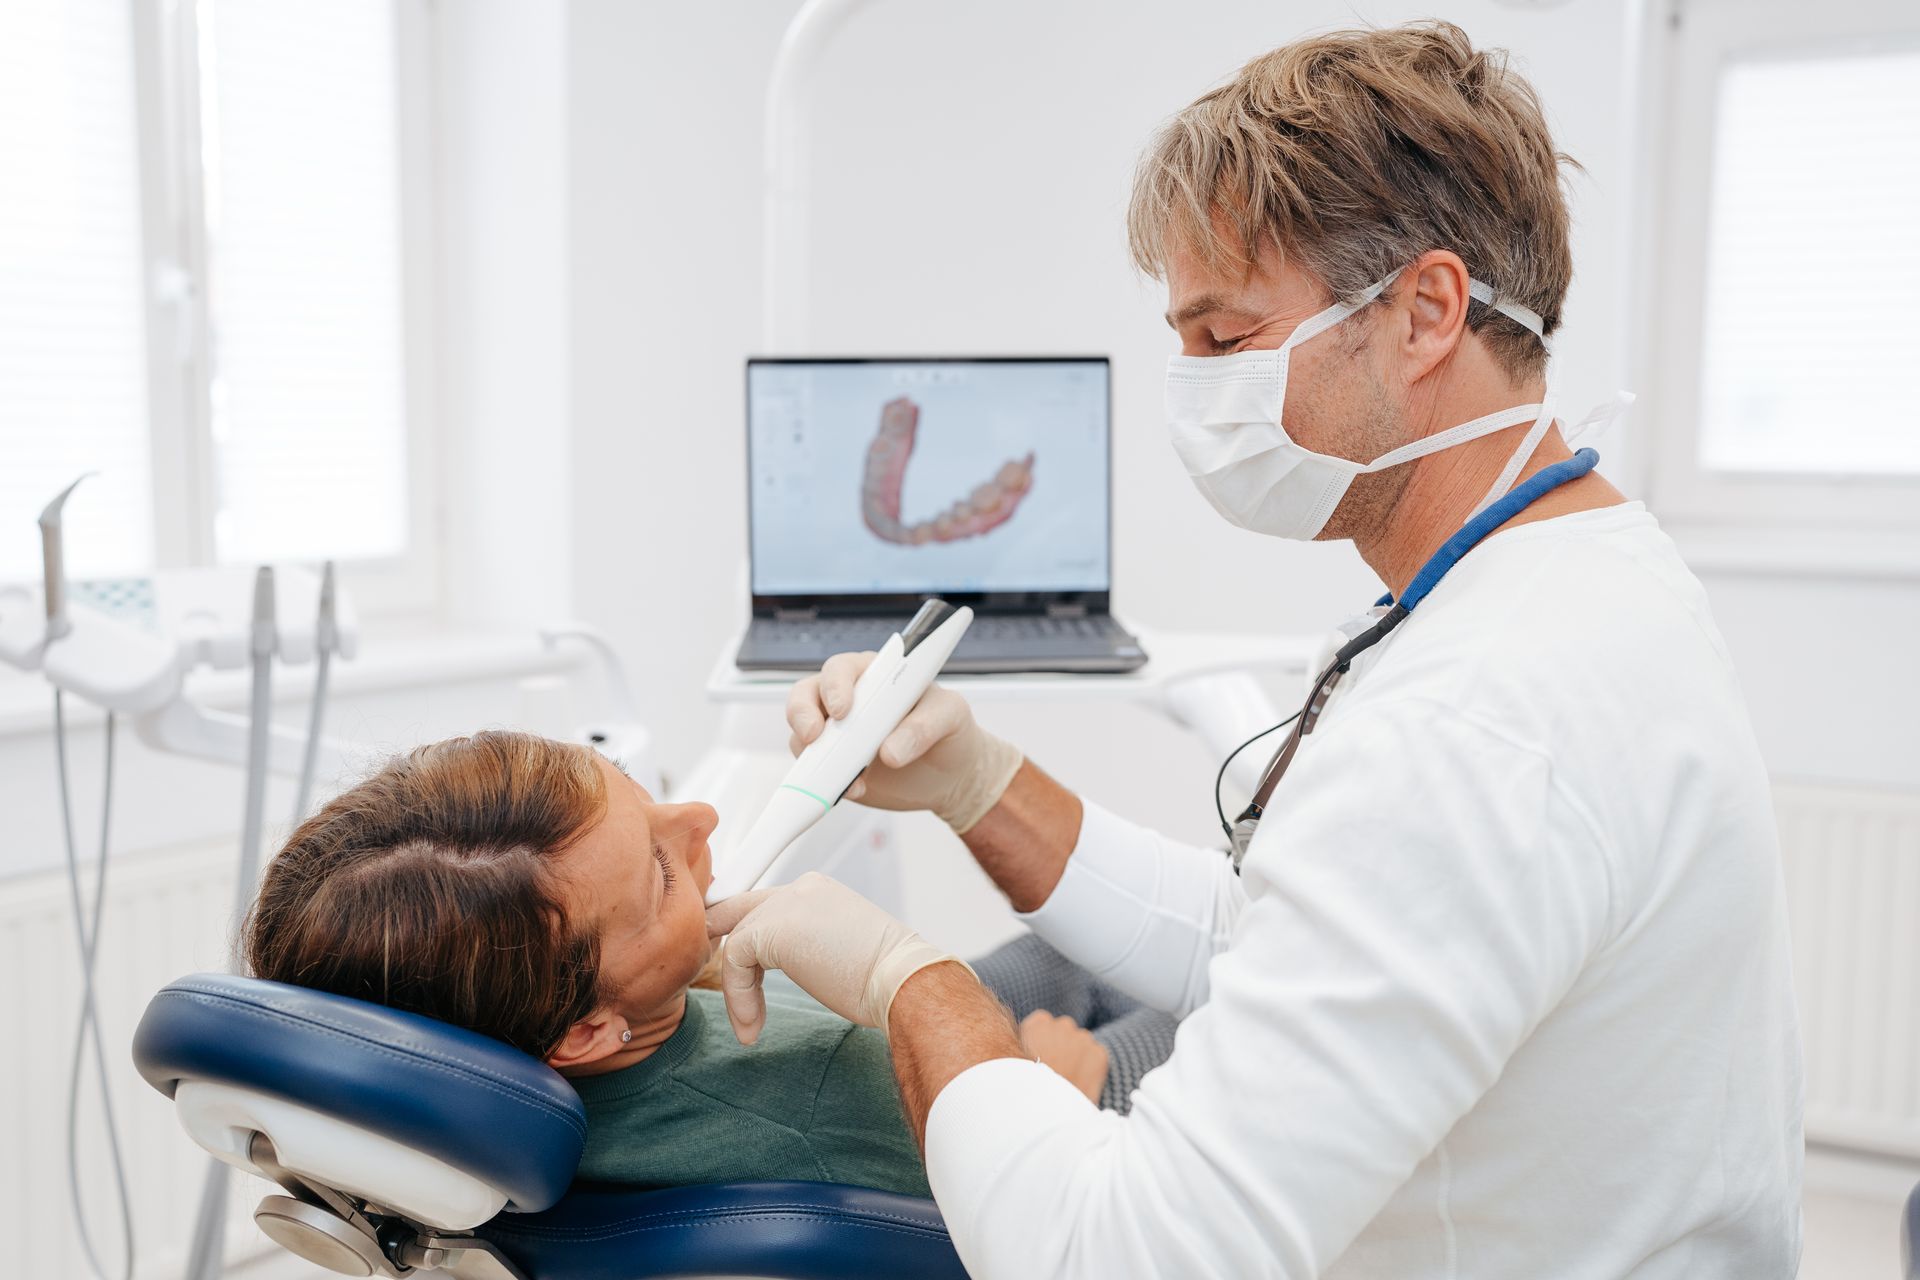 Jens Budde scannt die Zähne einer Patientin mit einem 3D Scanner